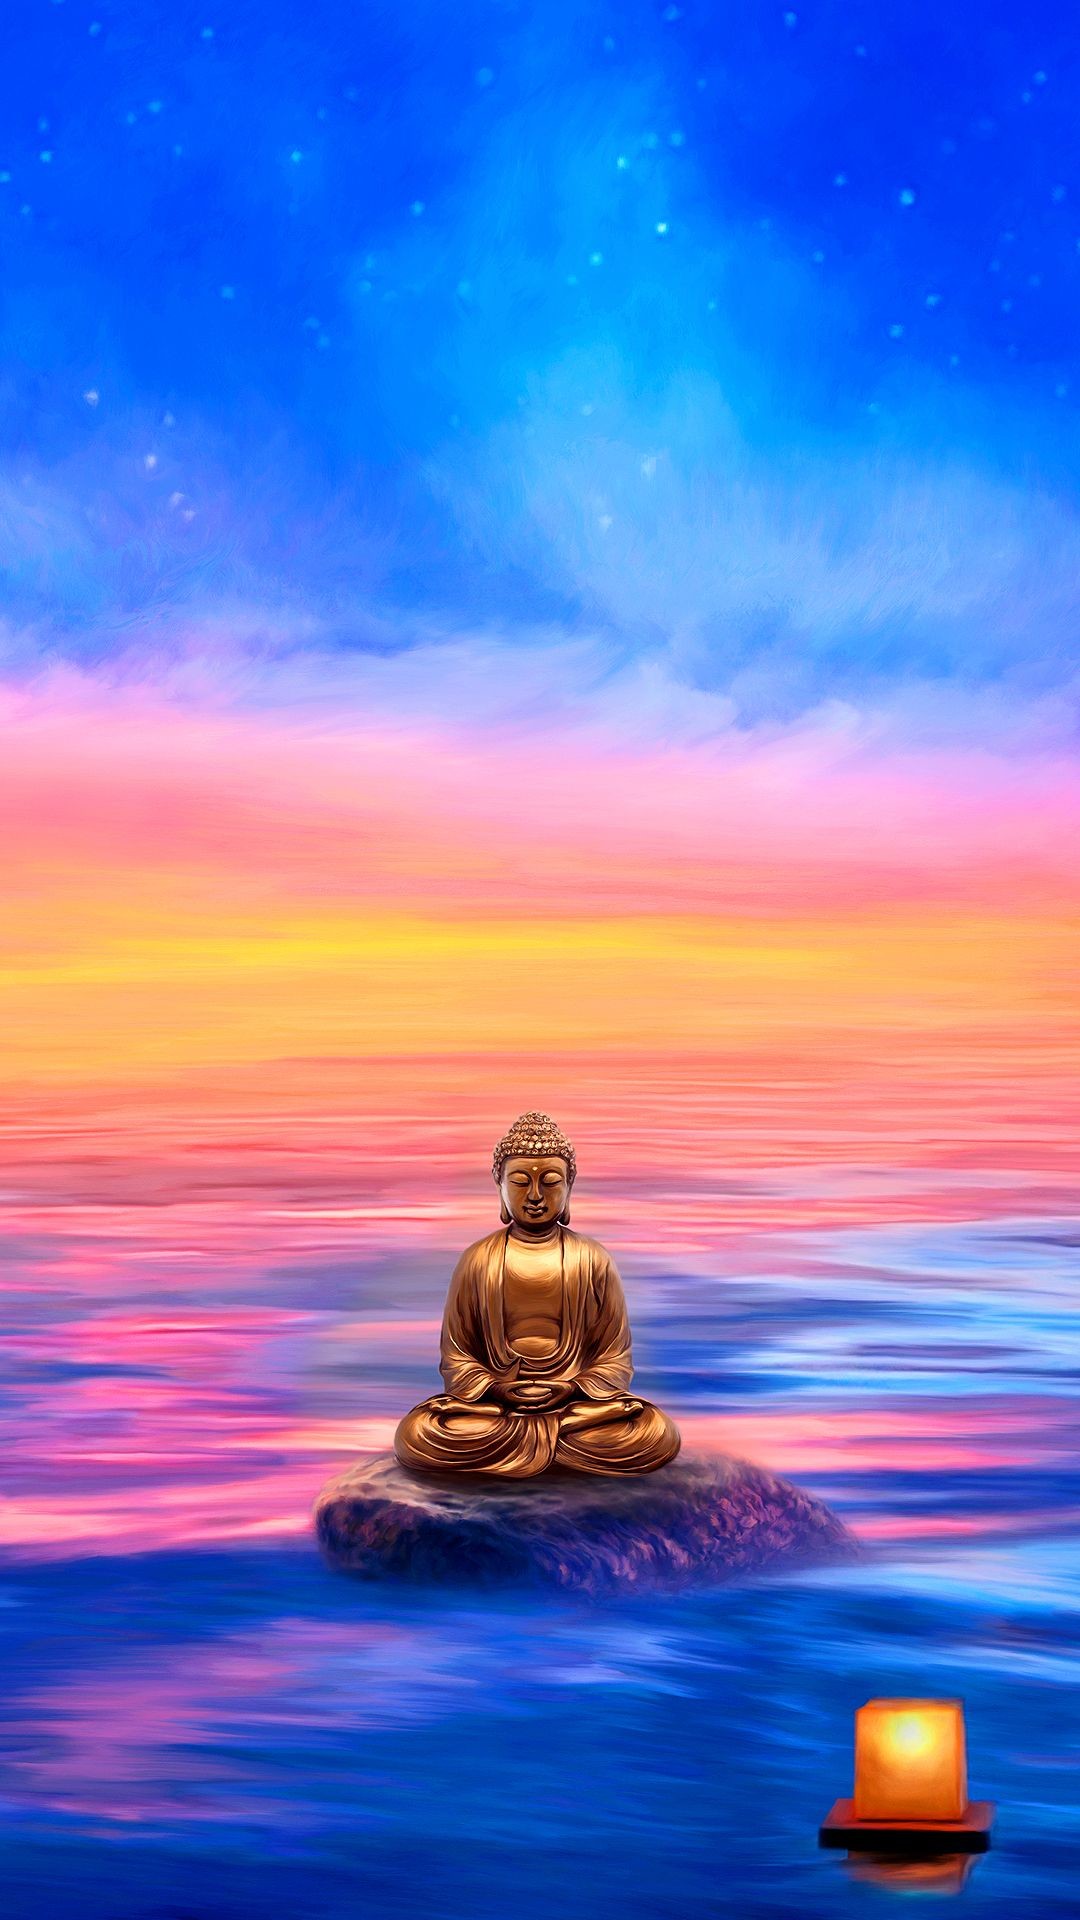 Hãy tải ngay ảnh phật hình nền điện thoại để cảm nhận được sự thanh tịnh và yên bình trong cuộc sống hằng ngày. Từ giờ đến mãi mãi, thần tượng của đấng Phật sẽ luôn bảo vệ bạn trên mọi nẻo đường.